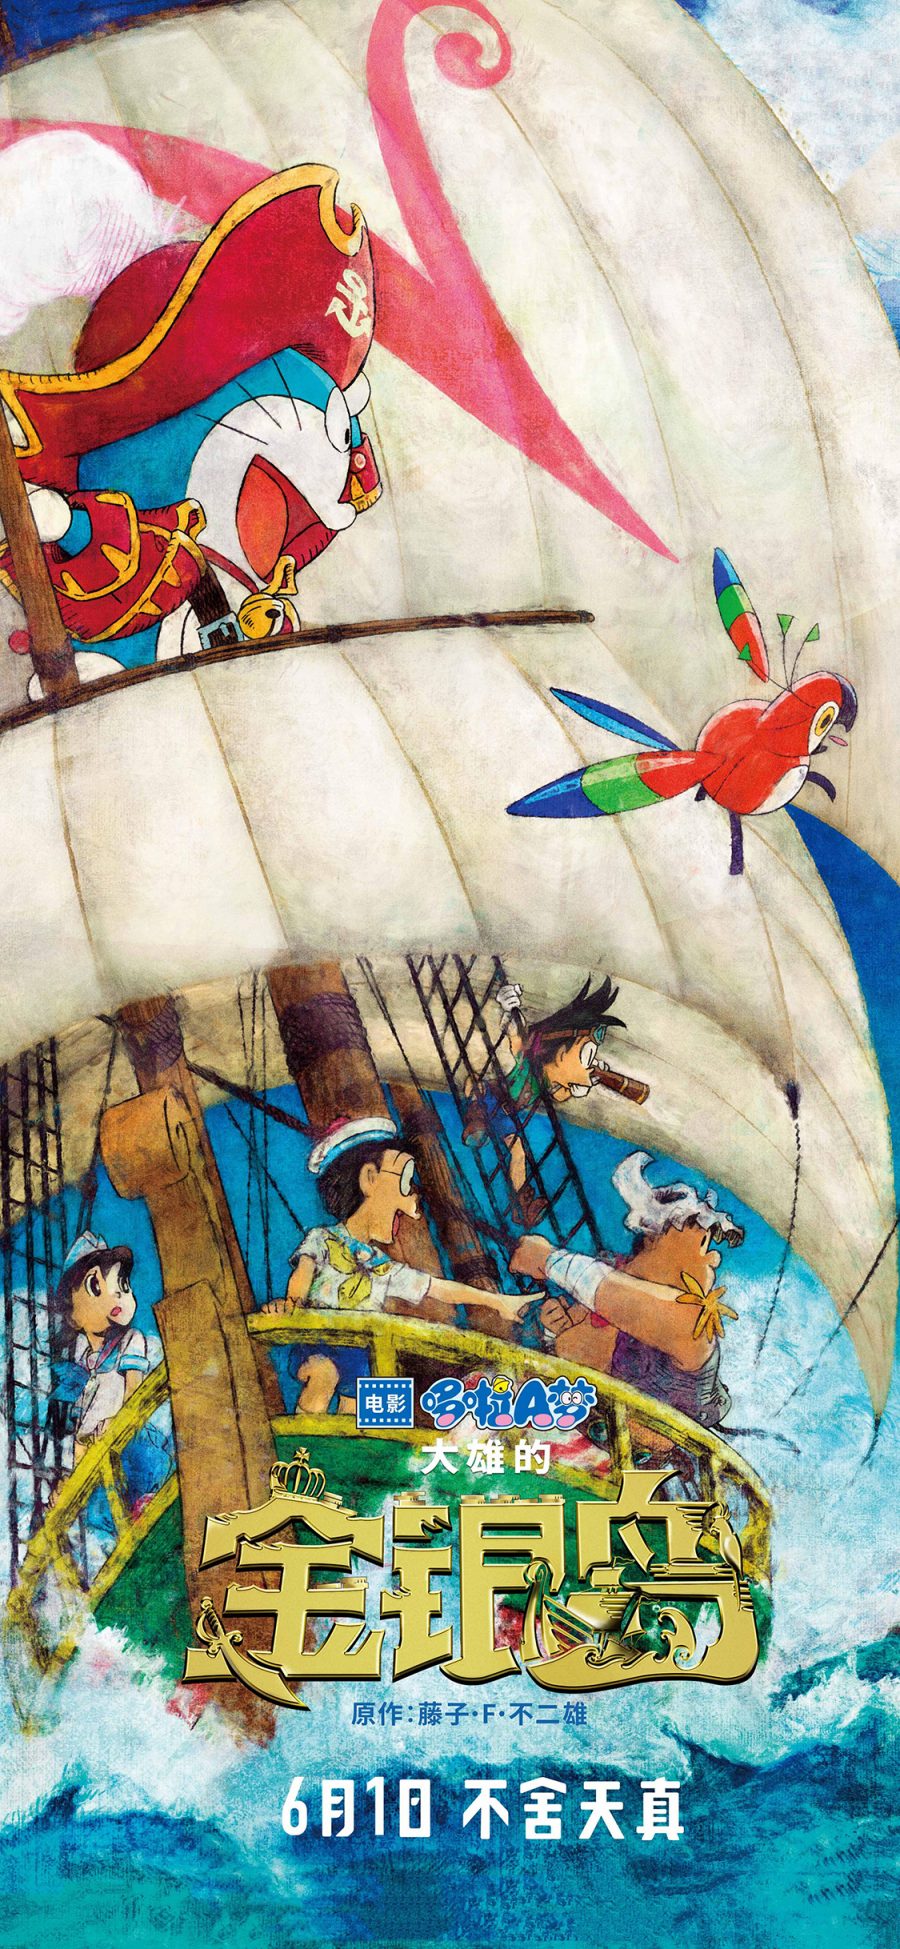 [2436×1125]哆啦A梦 大雄的金银岛 带我回家 动画片 卡通 电影 海报 苹果手机动漫壁纸图片